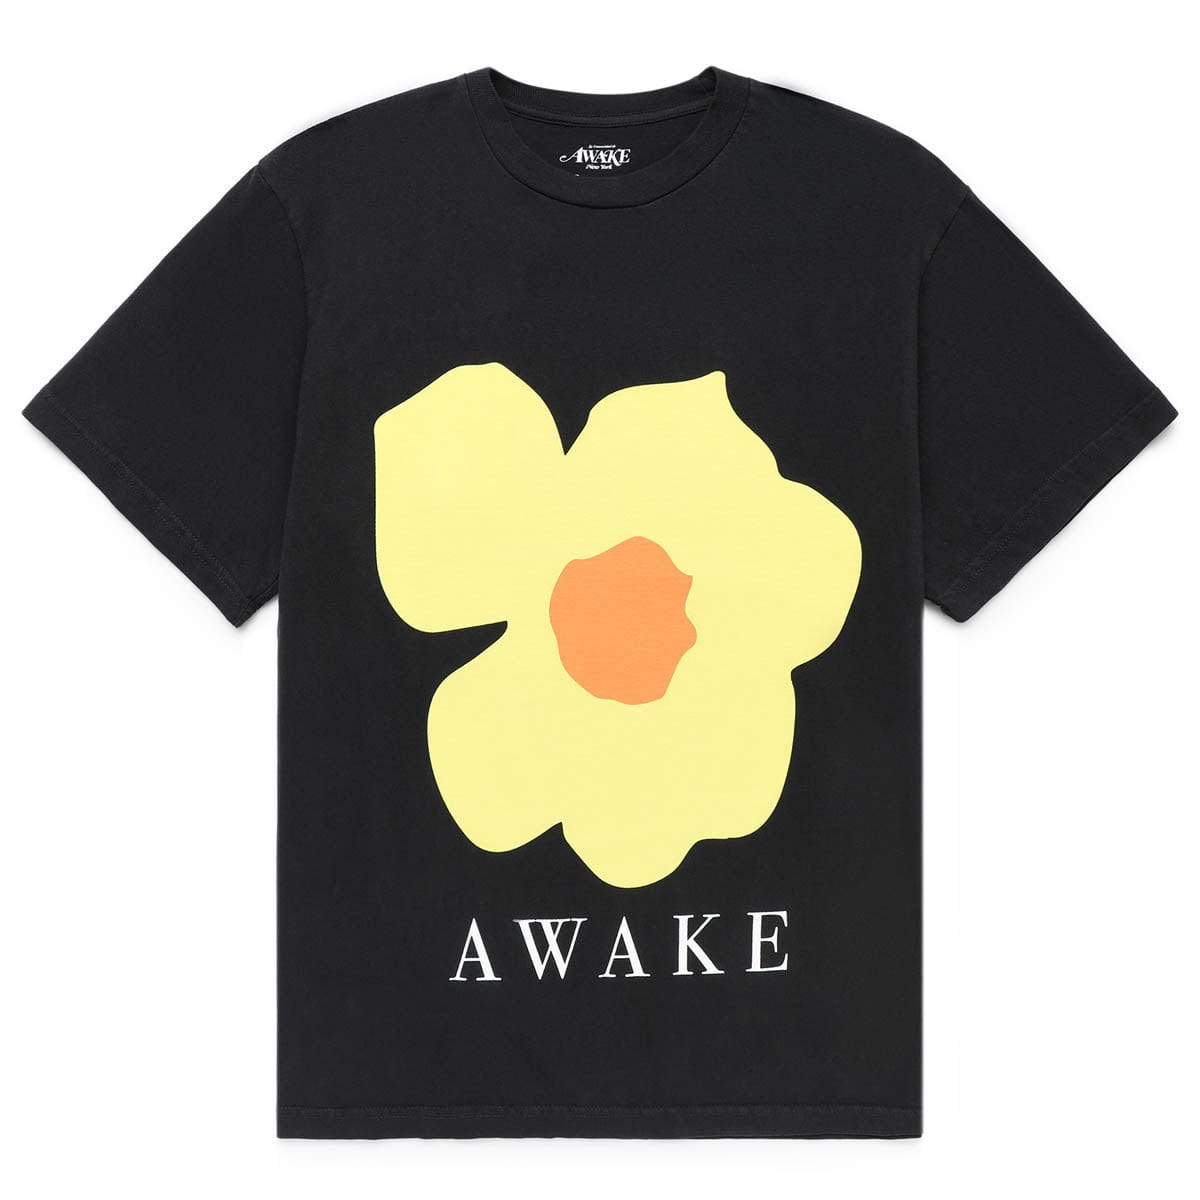 Awake NY T-Shirts FLORAL PRINTED T-SHIRT